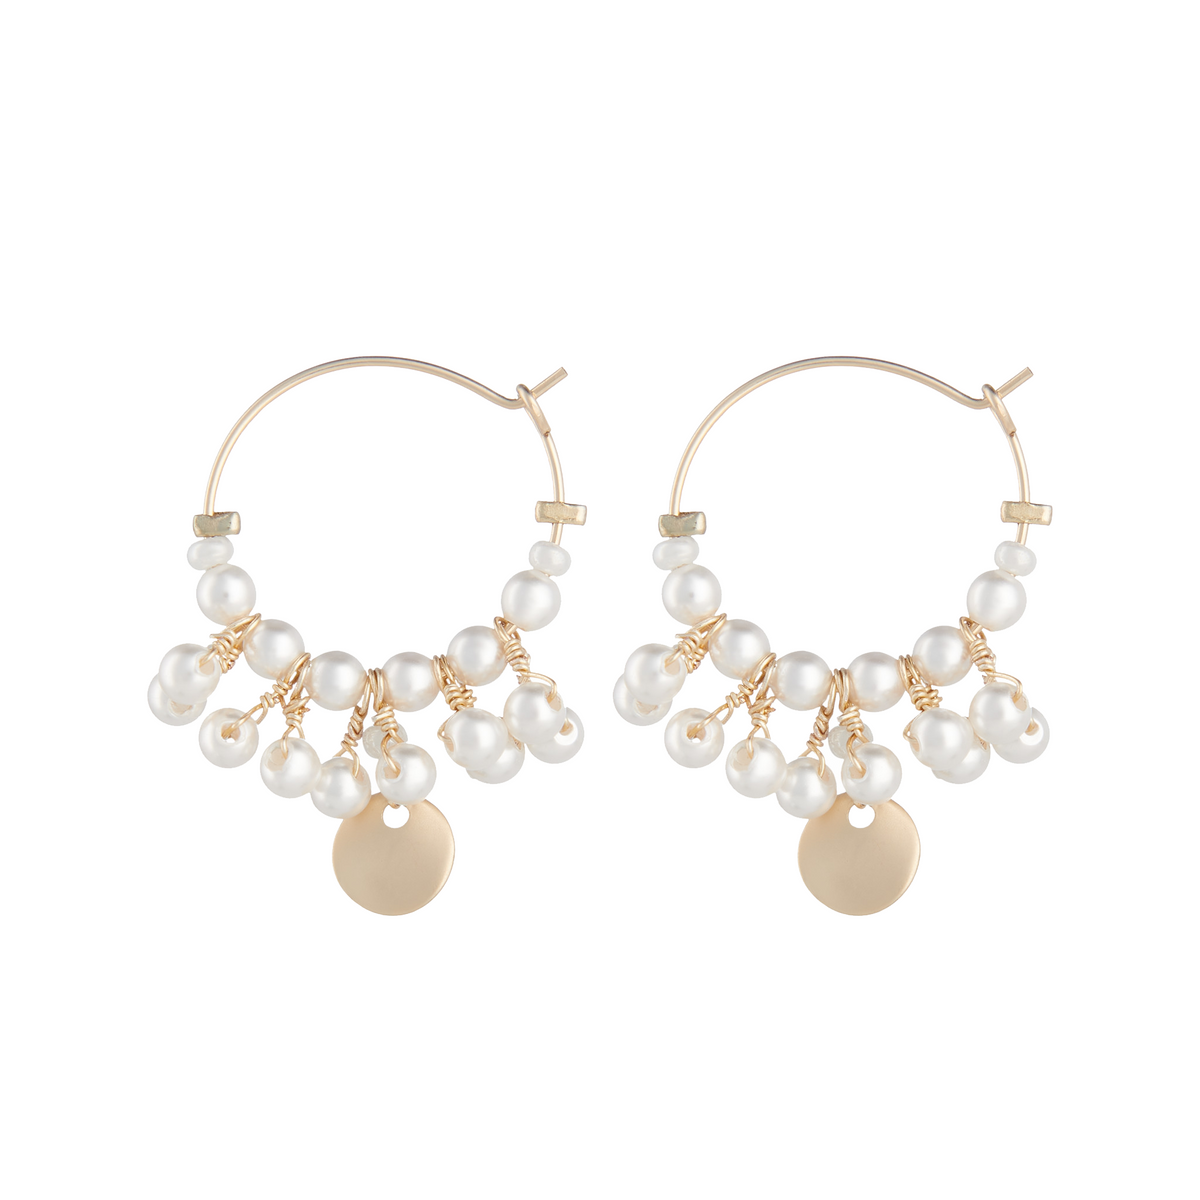 White pearl encrusted gold filled mini hoop earrings by Vivien Walsh